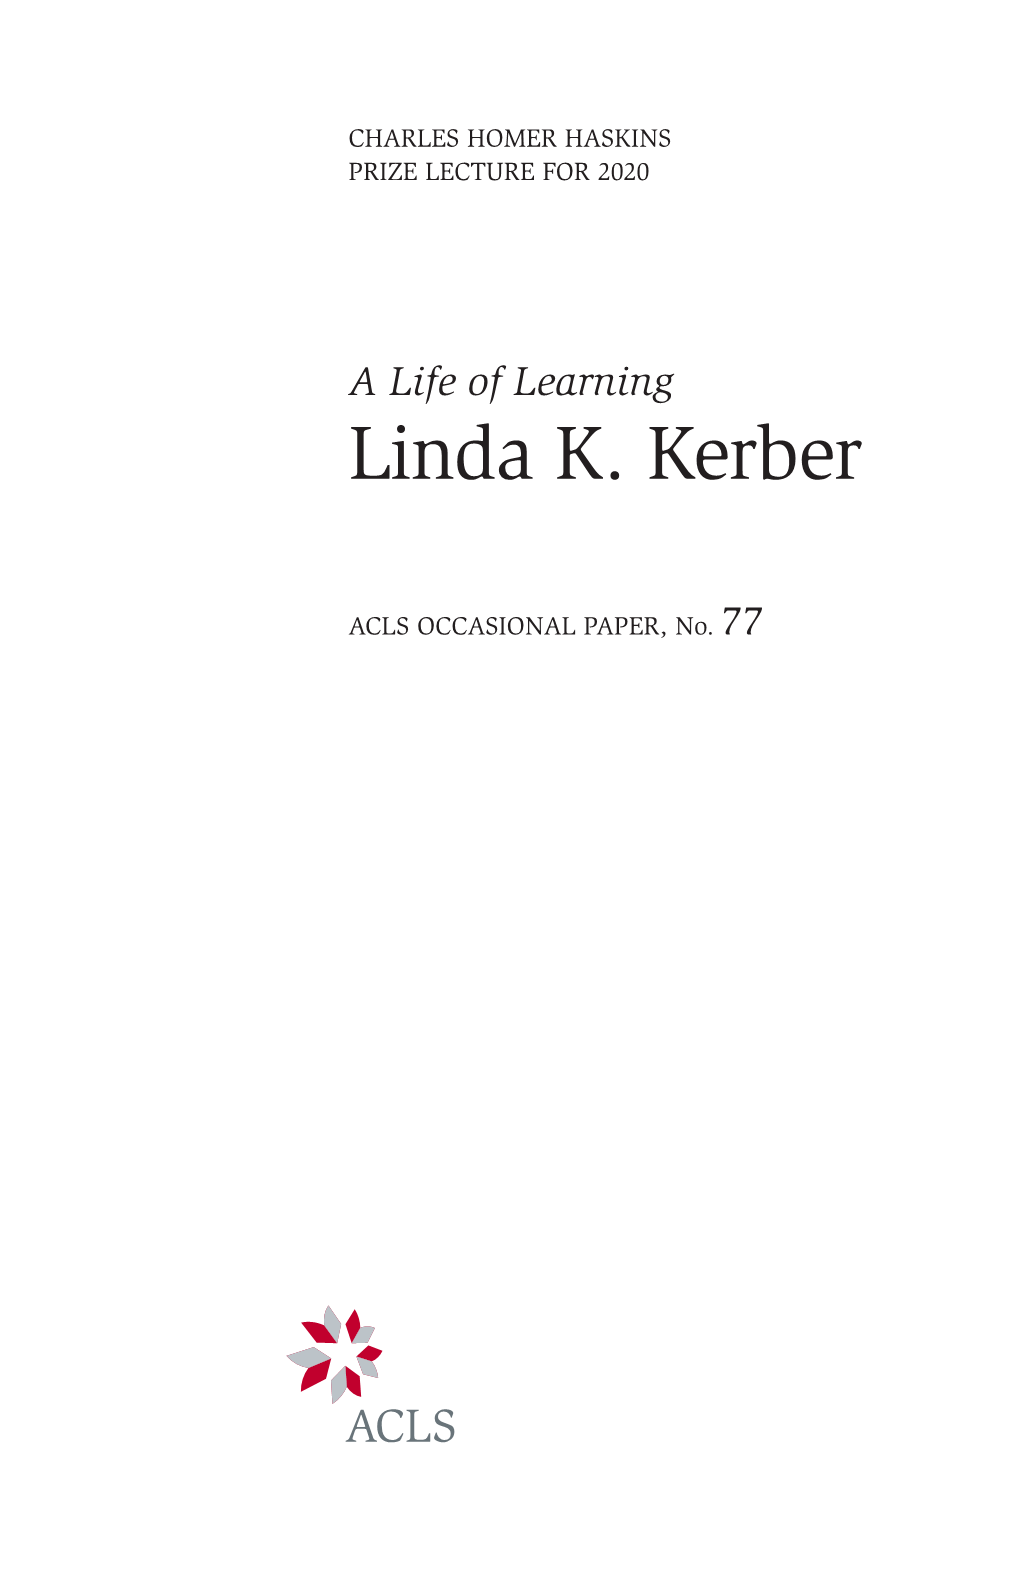 Linda K. Kerber